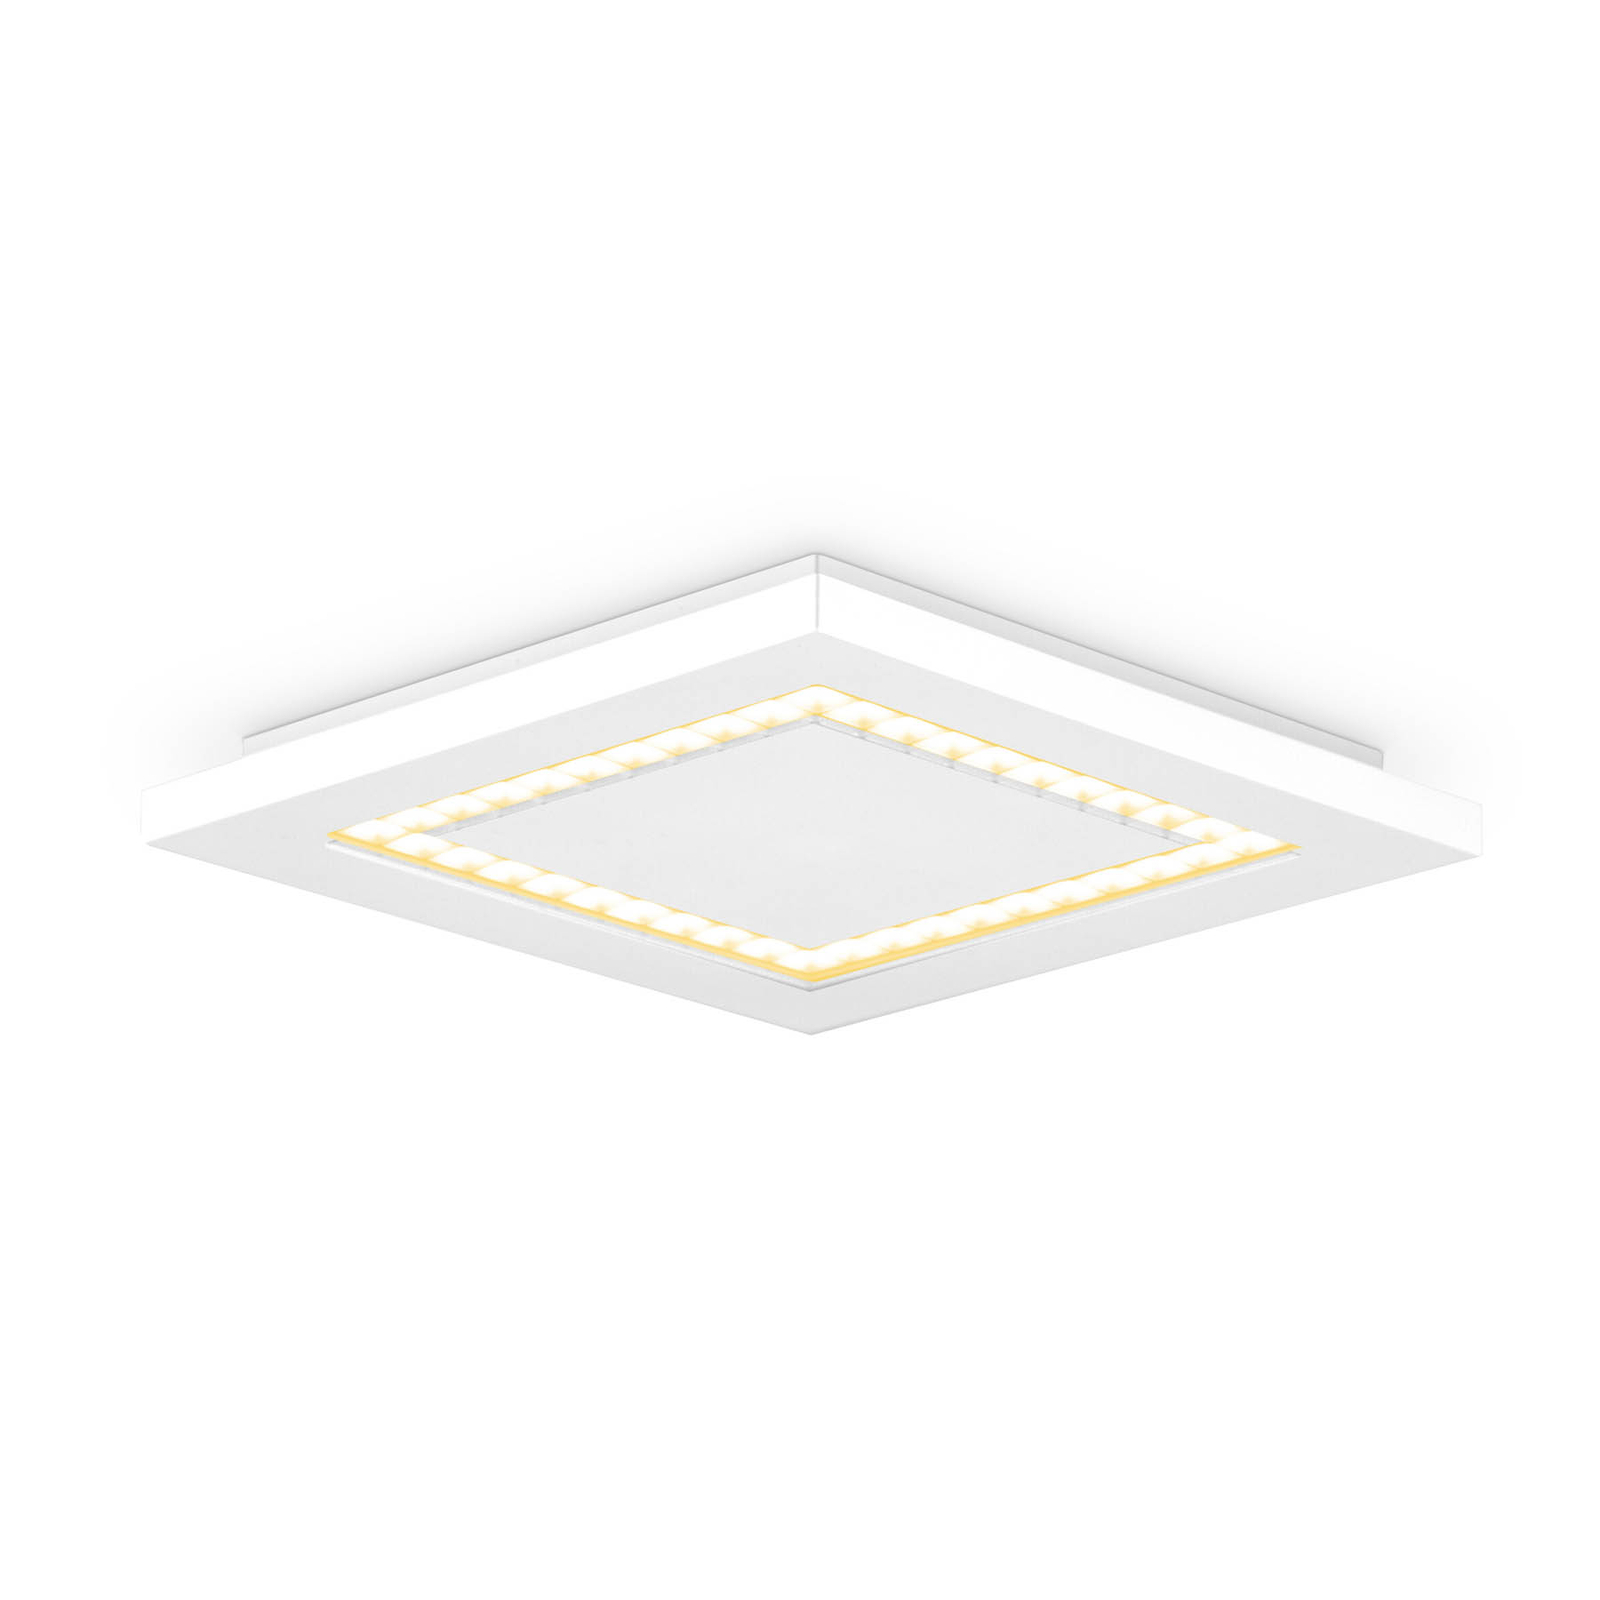 EVN ALQ pannello LED bianco 12W 25x25cm 3.000K